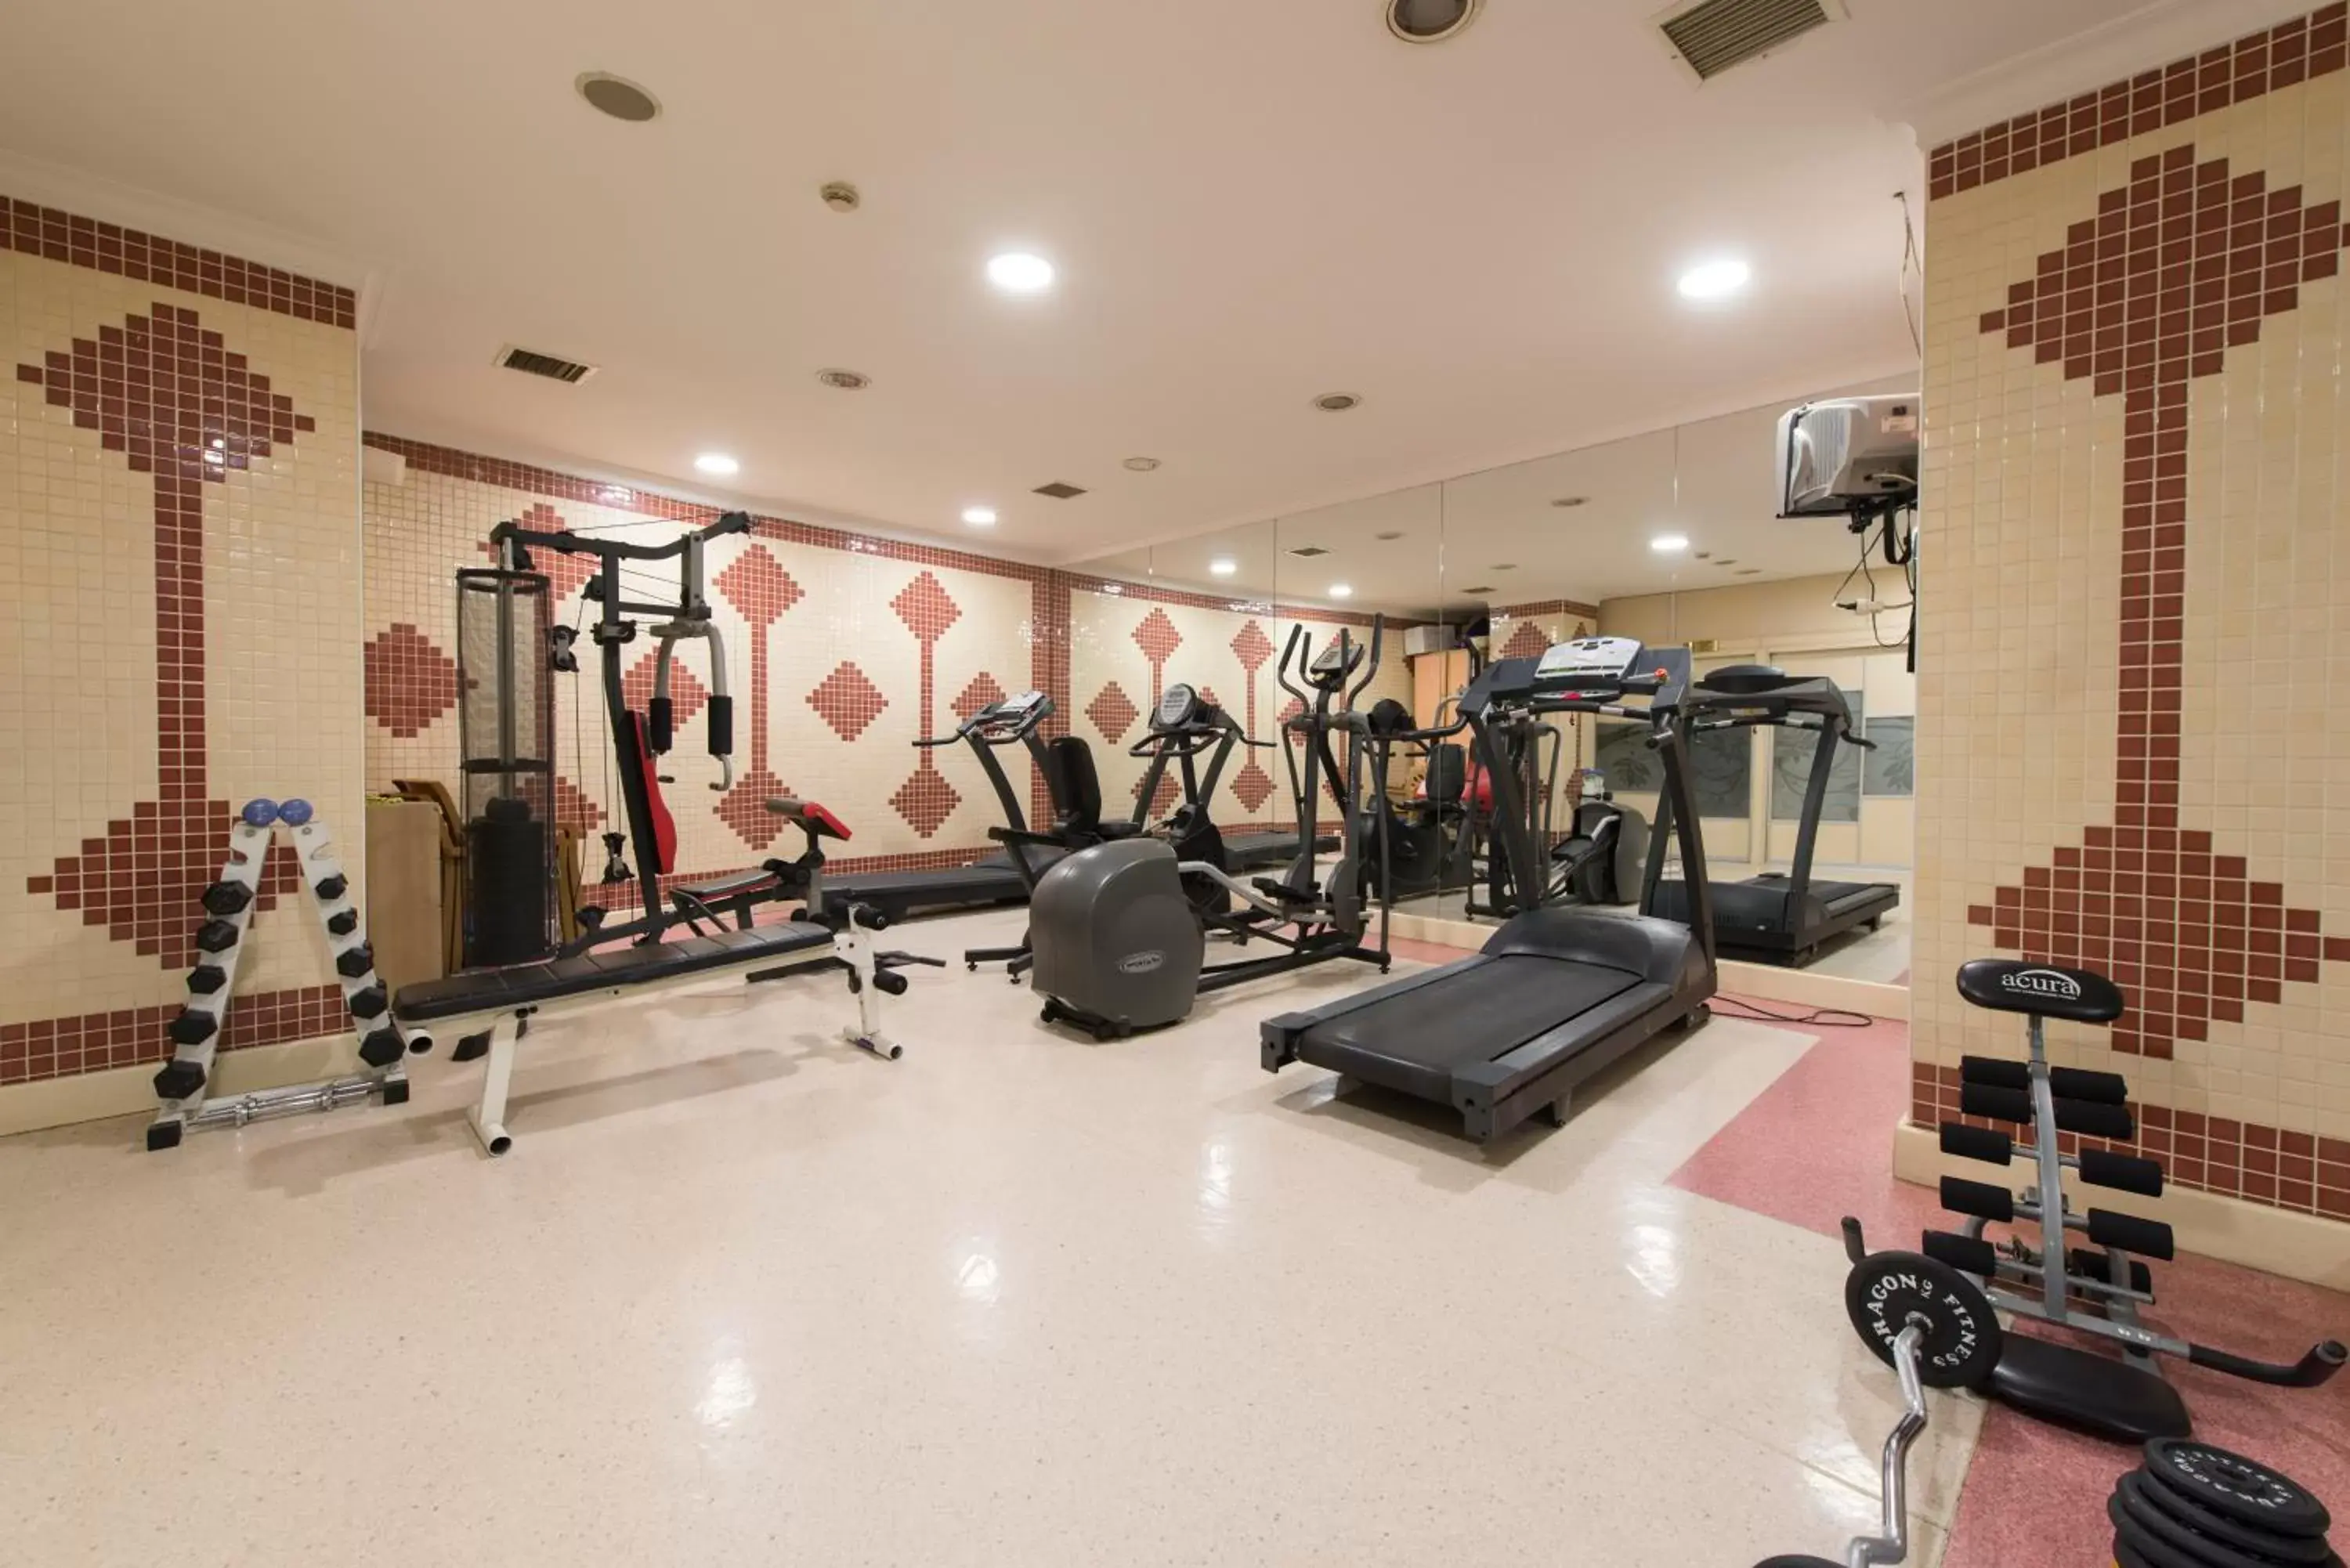 Fitness centre/facilities, Fitness Center/Facilities in Akar International Hotel